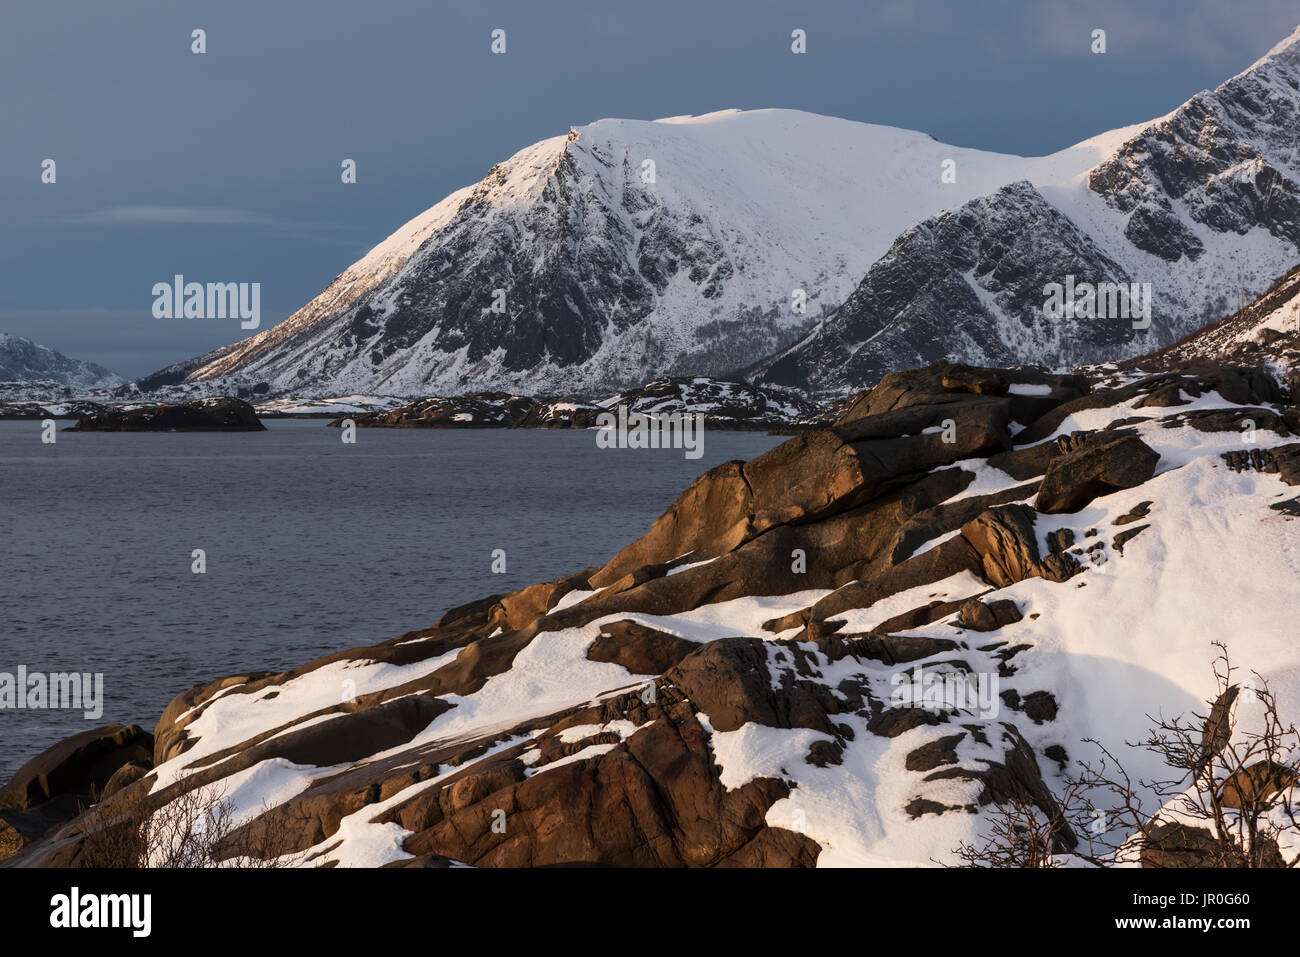 Robuste, montagnes couvertes de neige le long de la Côte d'une île, îles Lofoten, Nordland, Norvège Banque D'Images